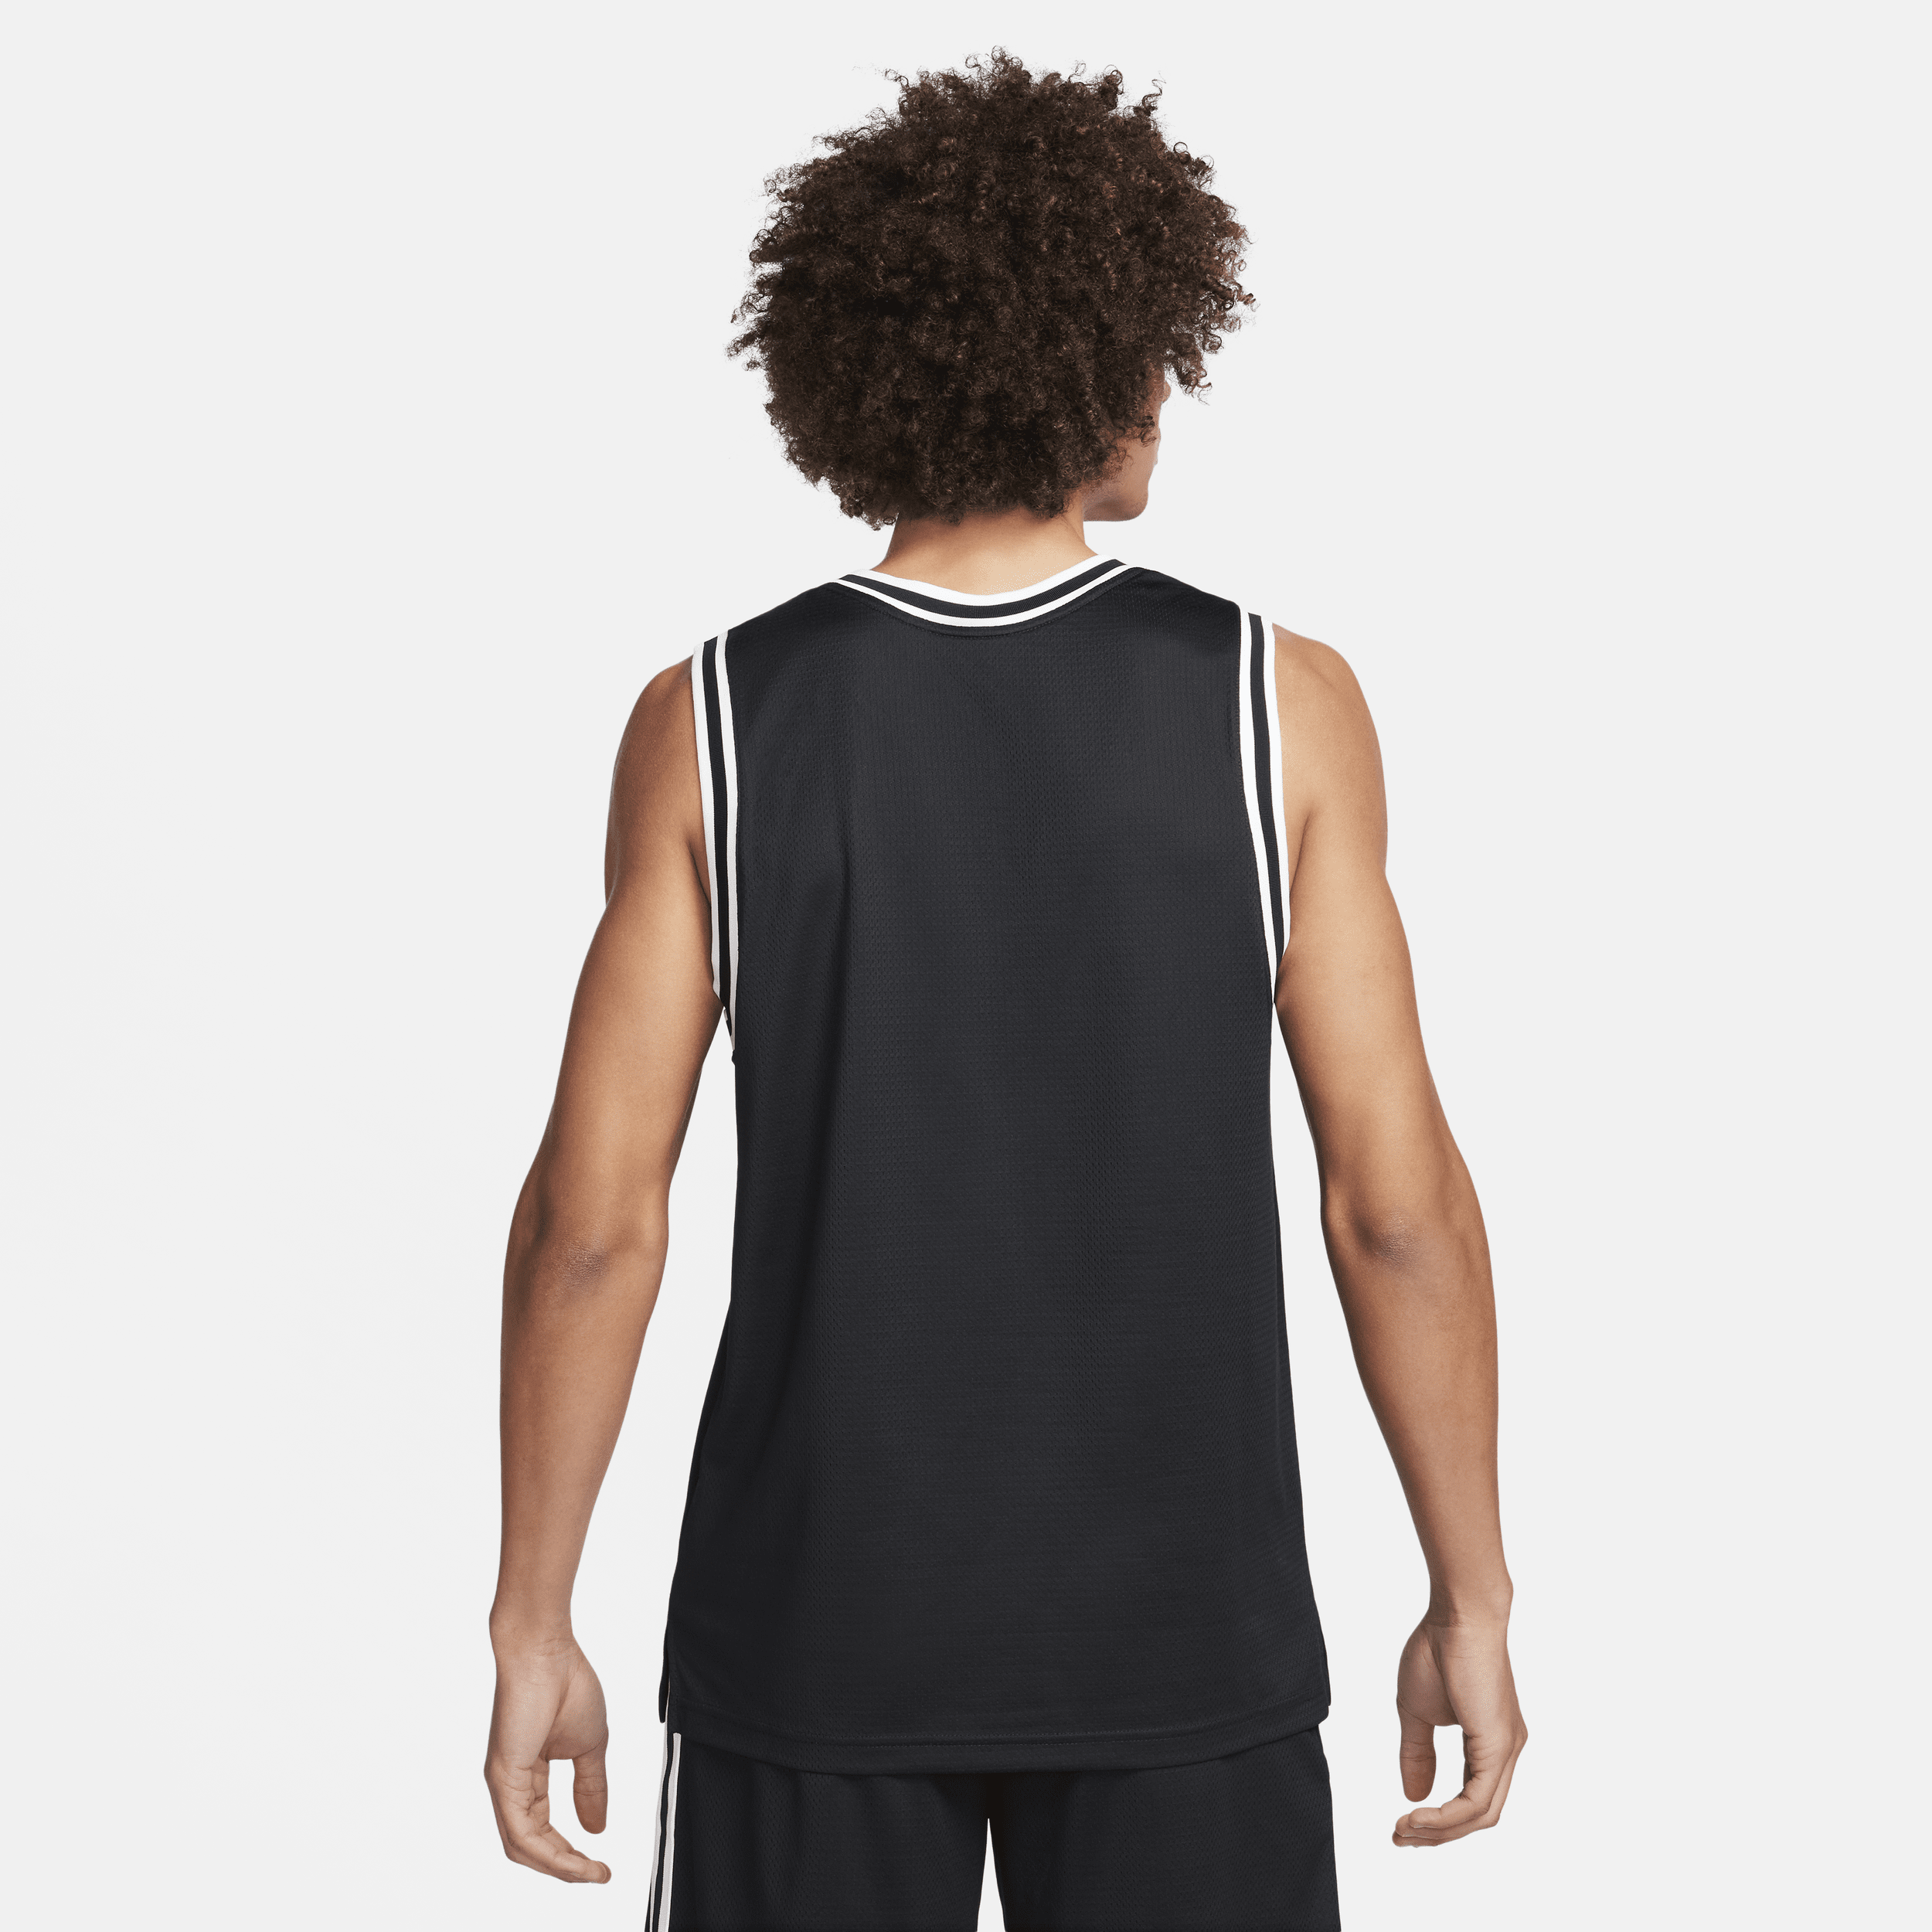 Nike DNA Dri-FIT basketbaljersey voor heren Zwart